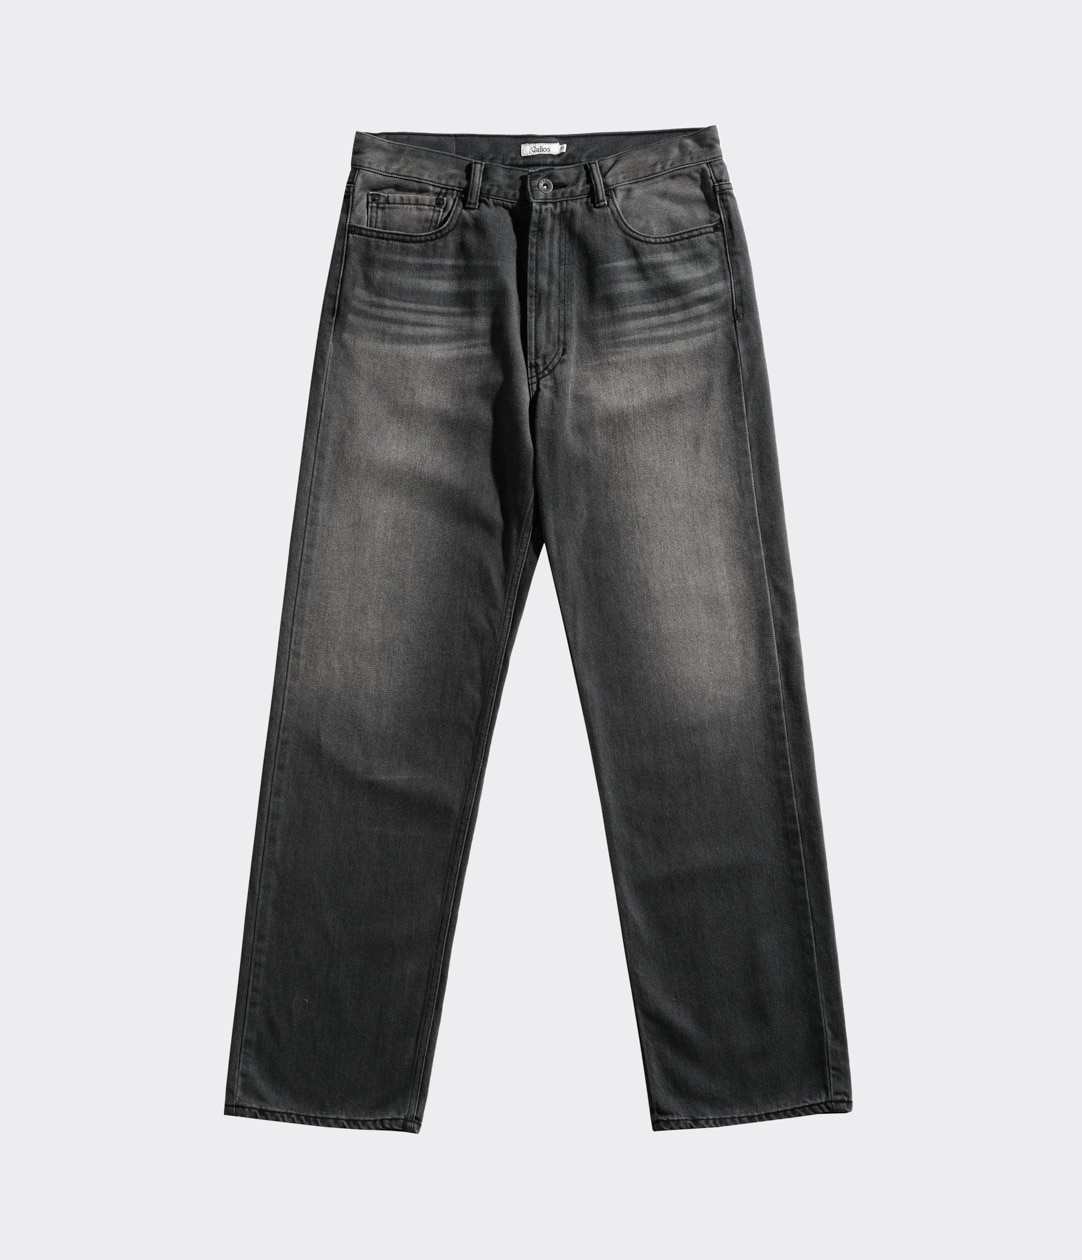 Calico Jeans (3rd Gen)/Noir Balearic